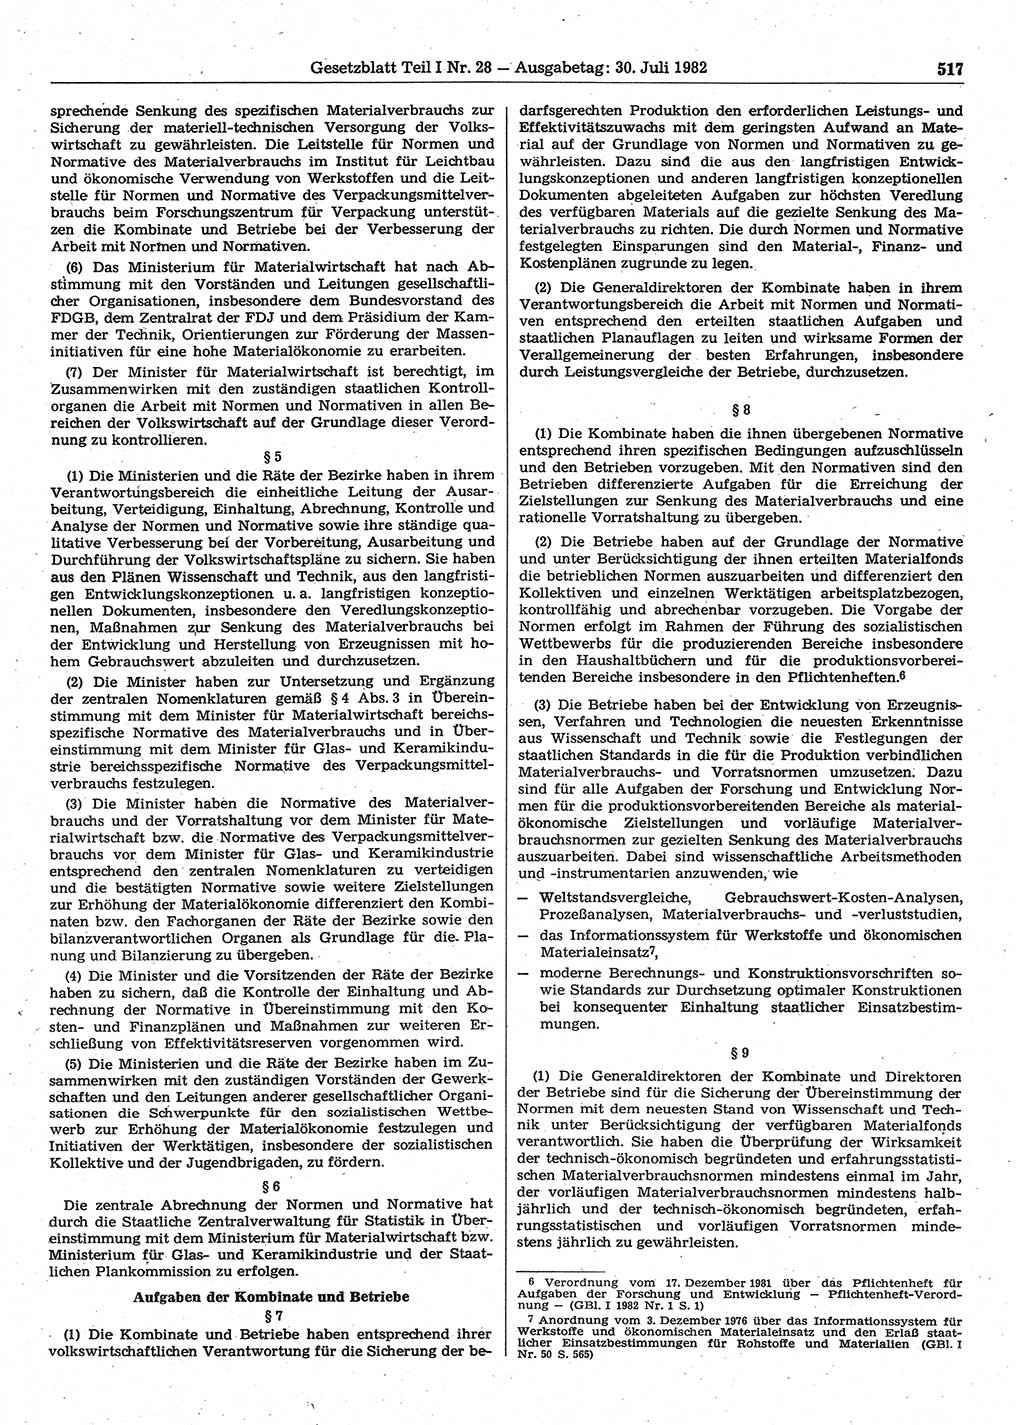 Gesetzblatt (GBl.) der Deutschen Demokratischen Republik (DDR) Teil Ⅰ 1982, Seite 517 (GBl. DDR Ⅰ 1982, S. 517)